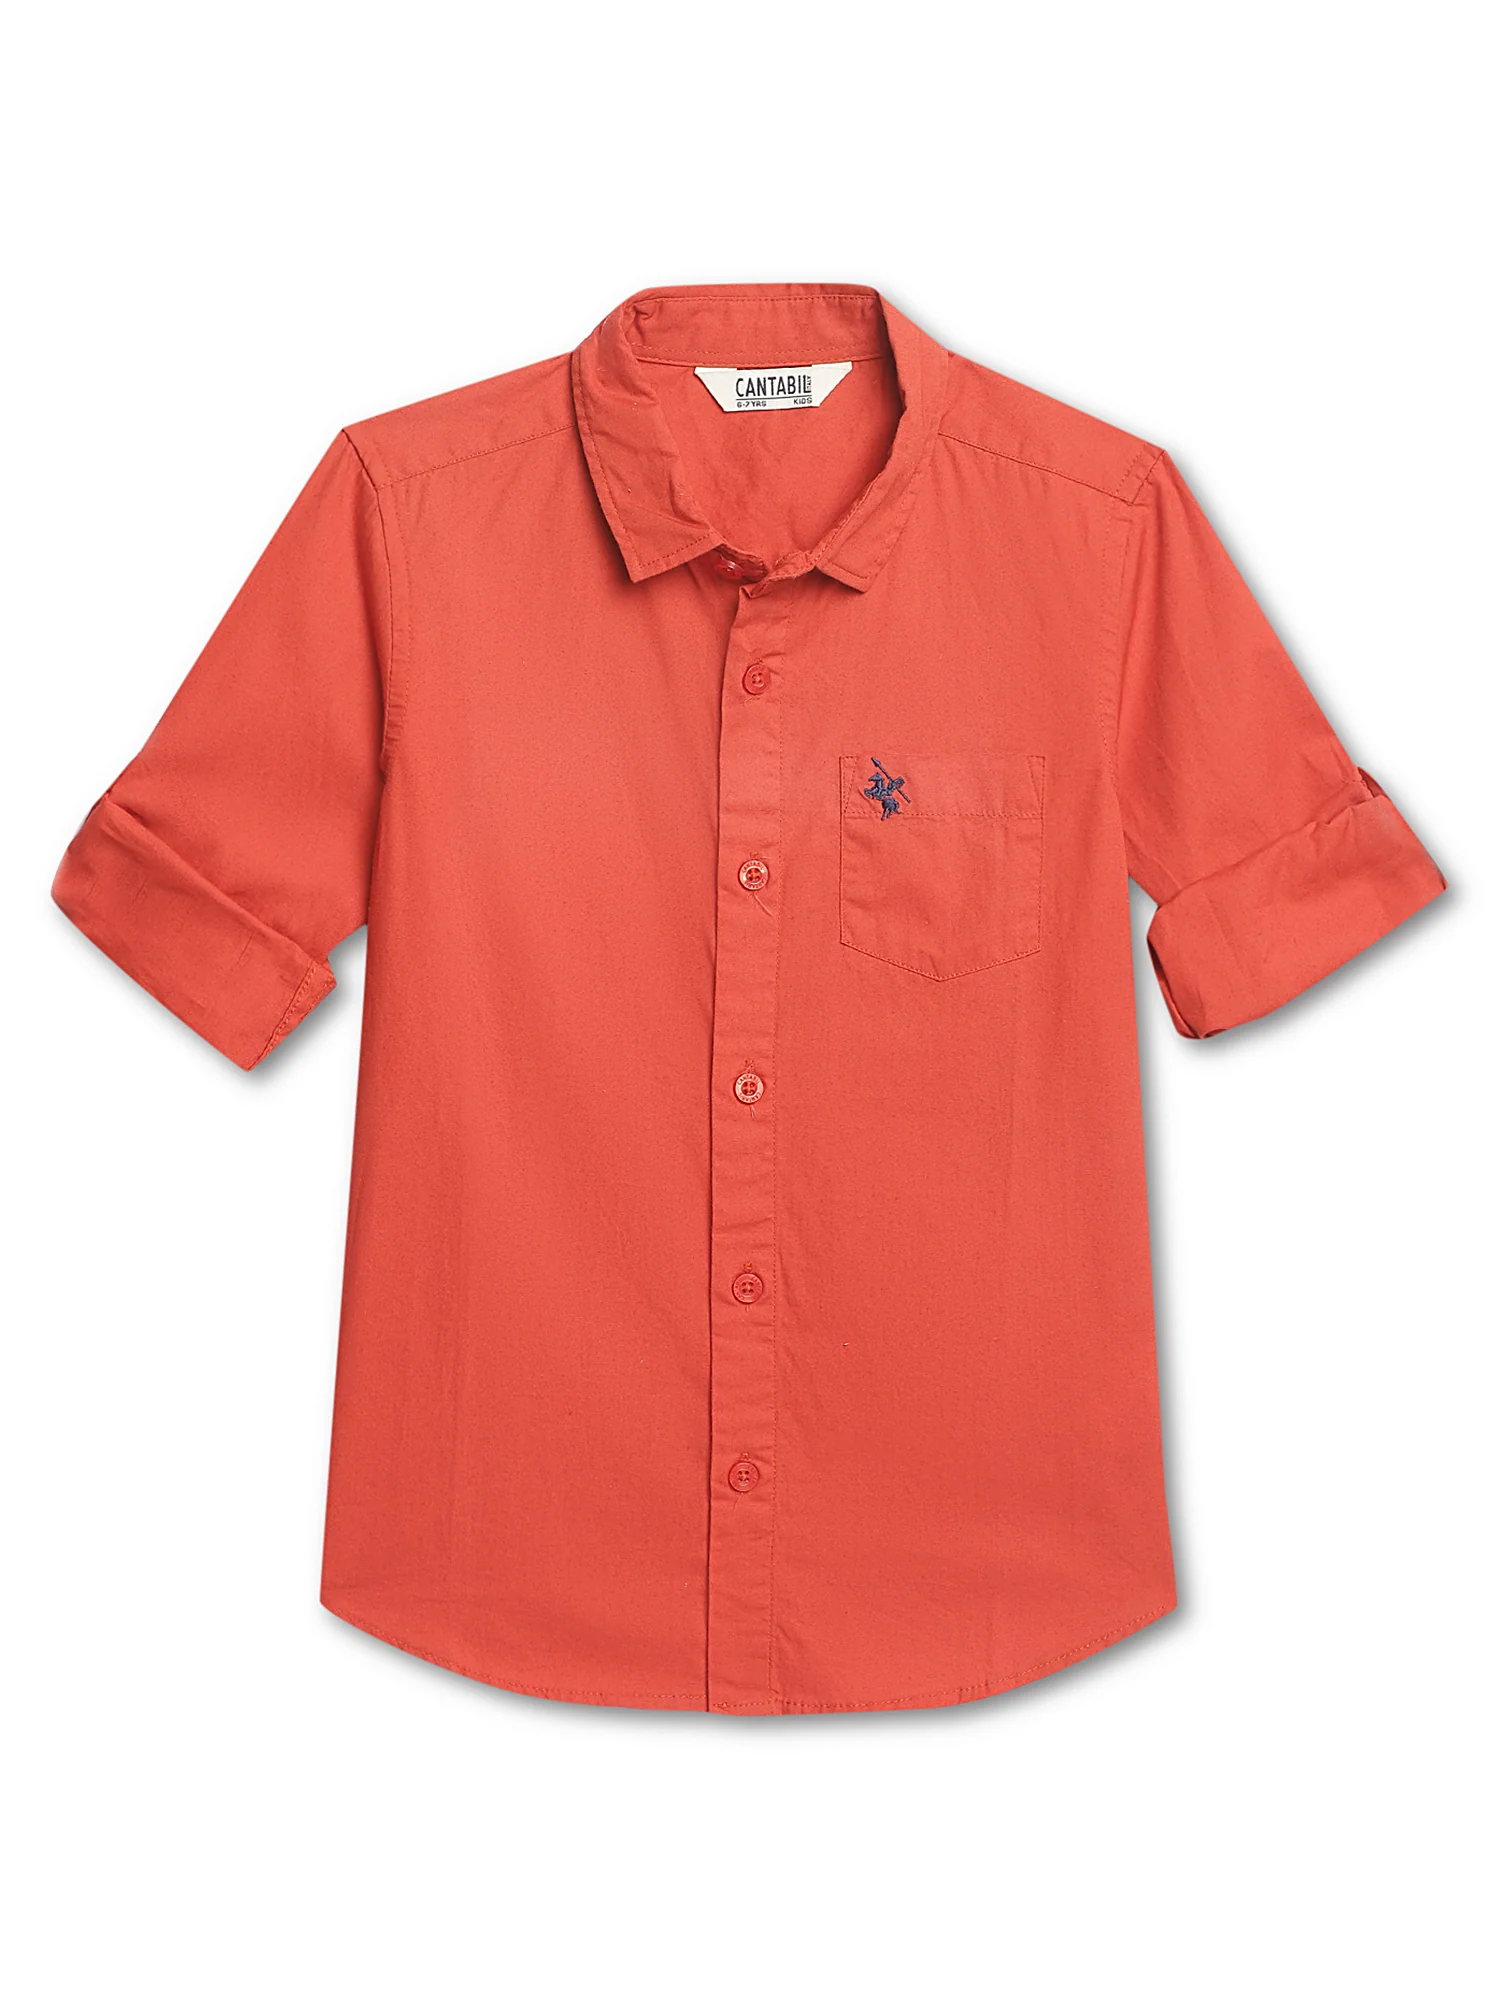 Boys Orange Shirt